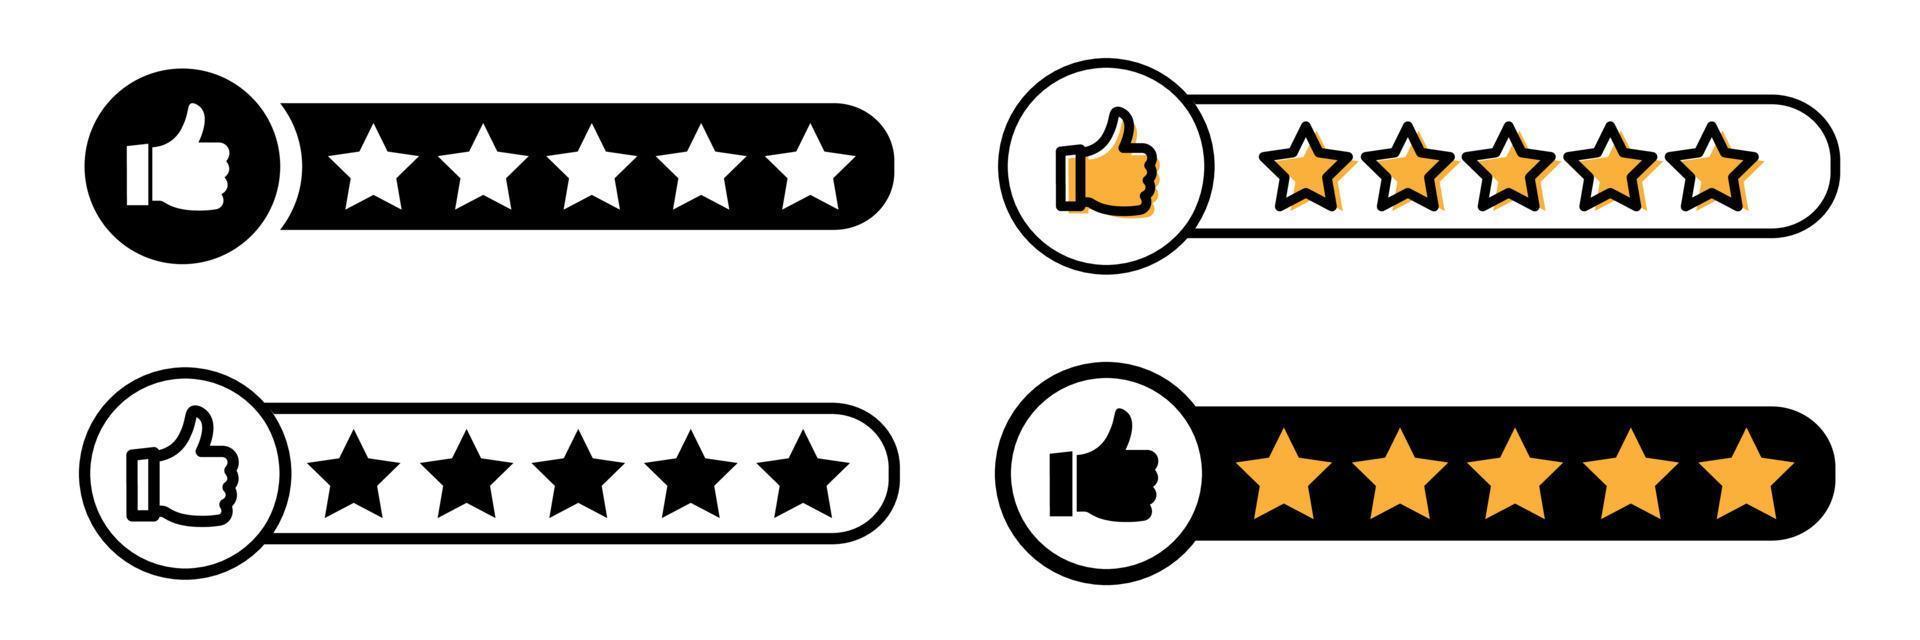 reputação 5 polegares para cima ícone de estrela. ícone de revisão do cliente, avaliação de qualidade, feedback. ilustração vetorial isolada. vetor